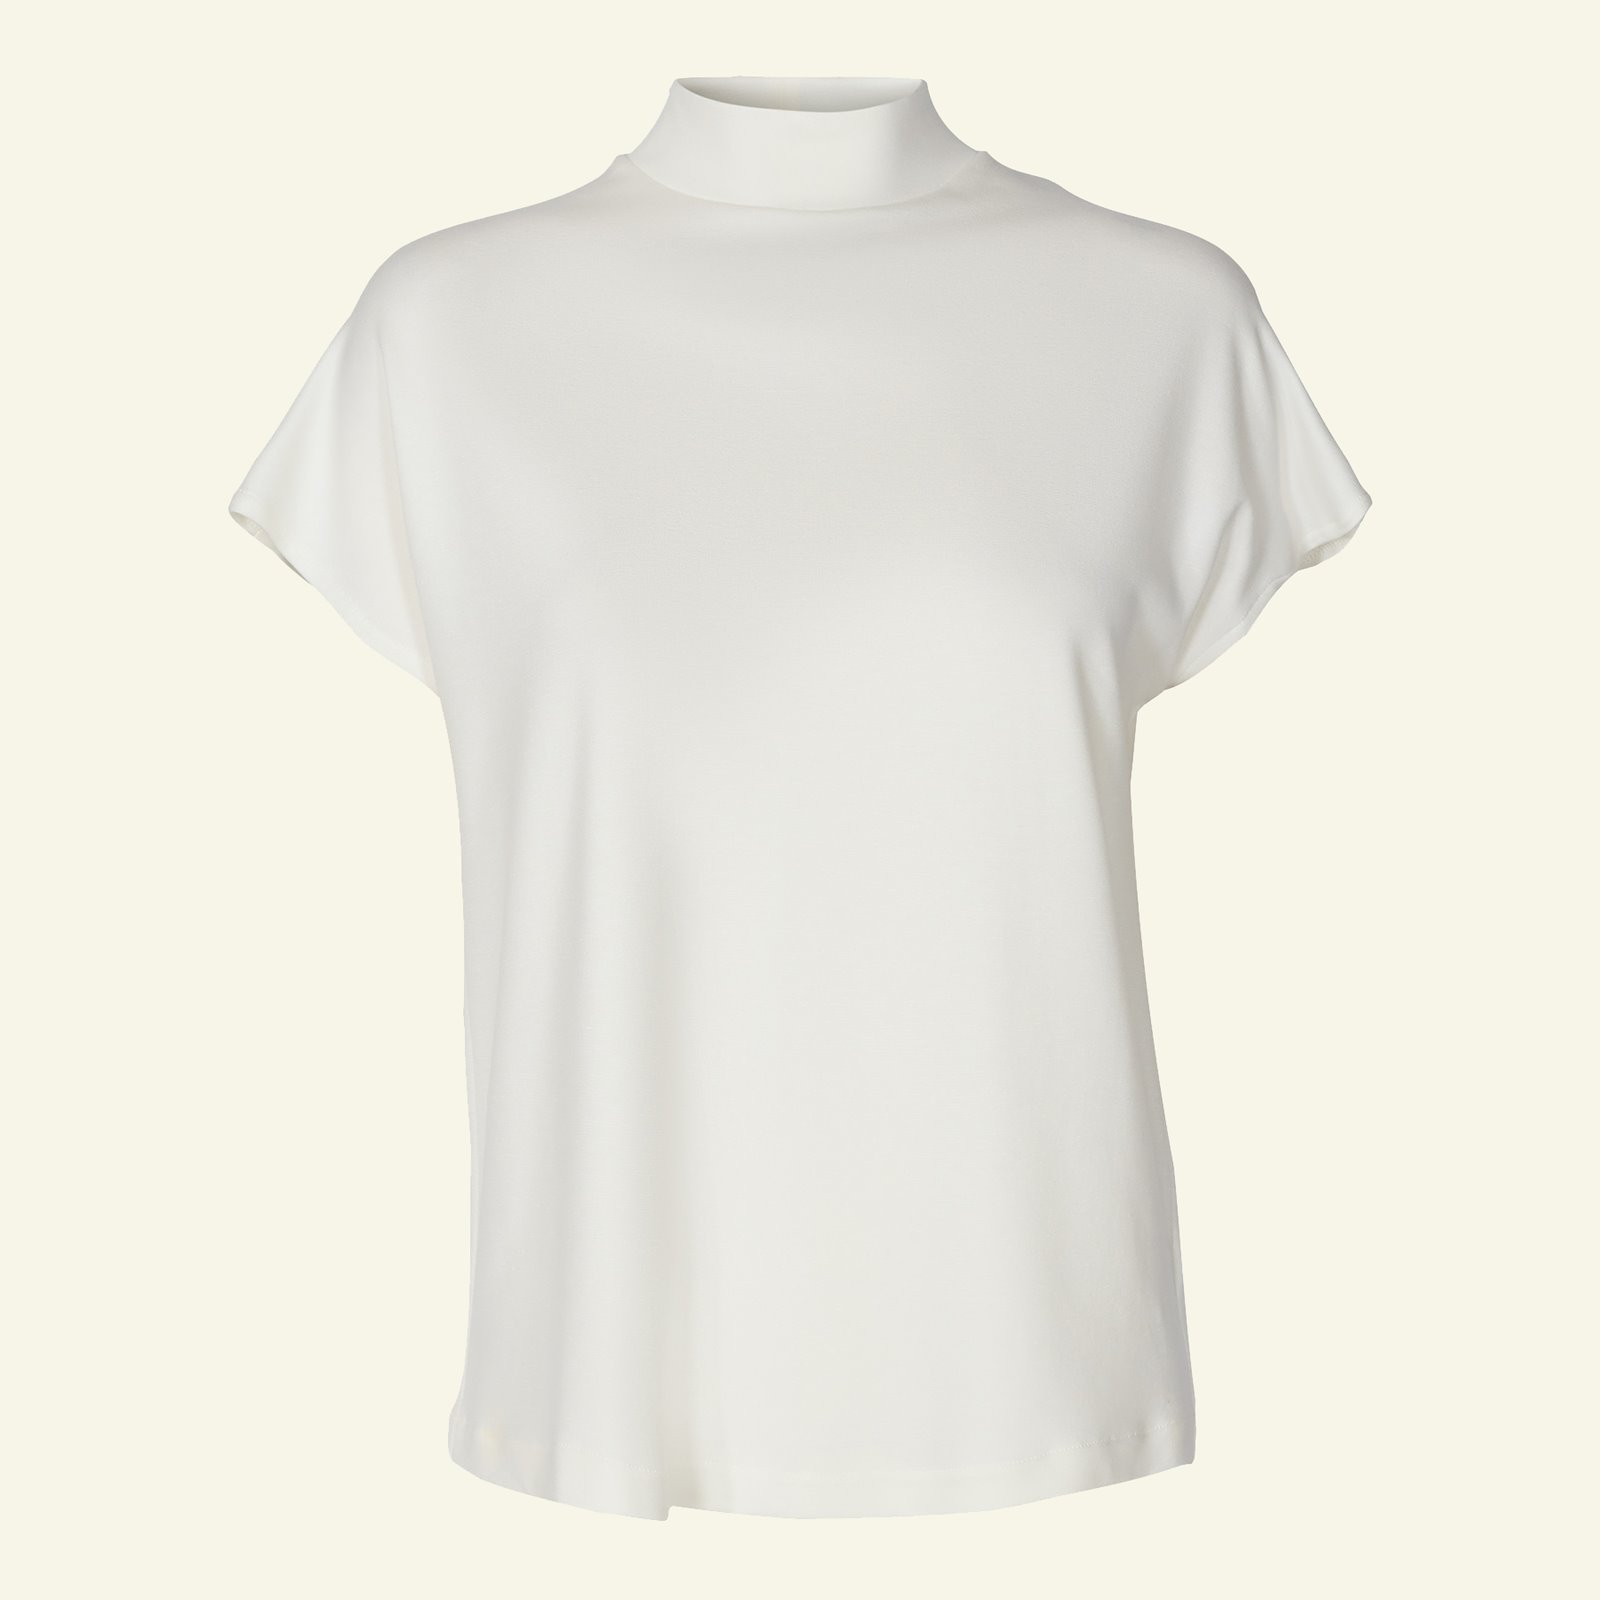 T-Shirt und Kleid, hoher Kragen, Gr. 36 p22069_270412_sskit